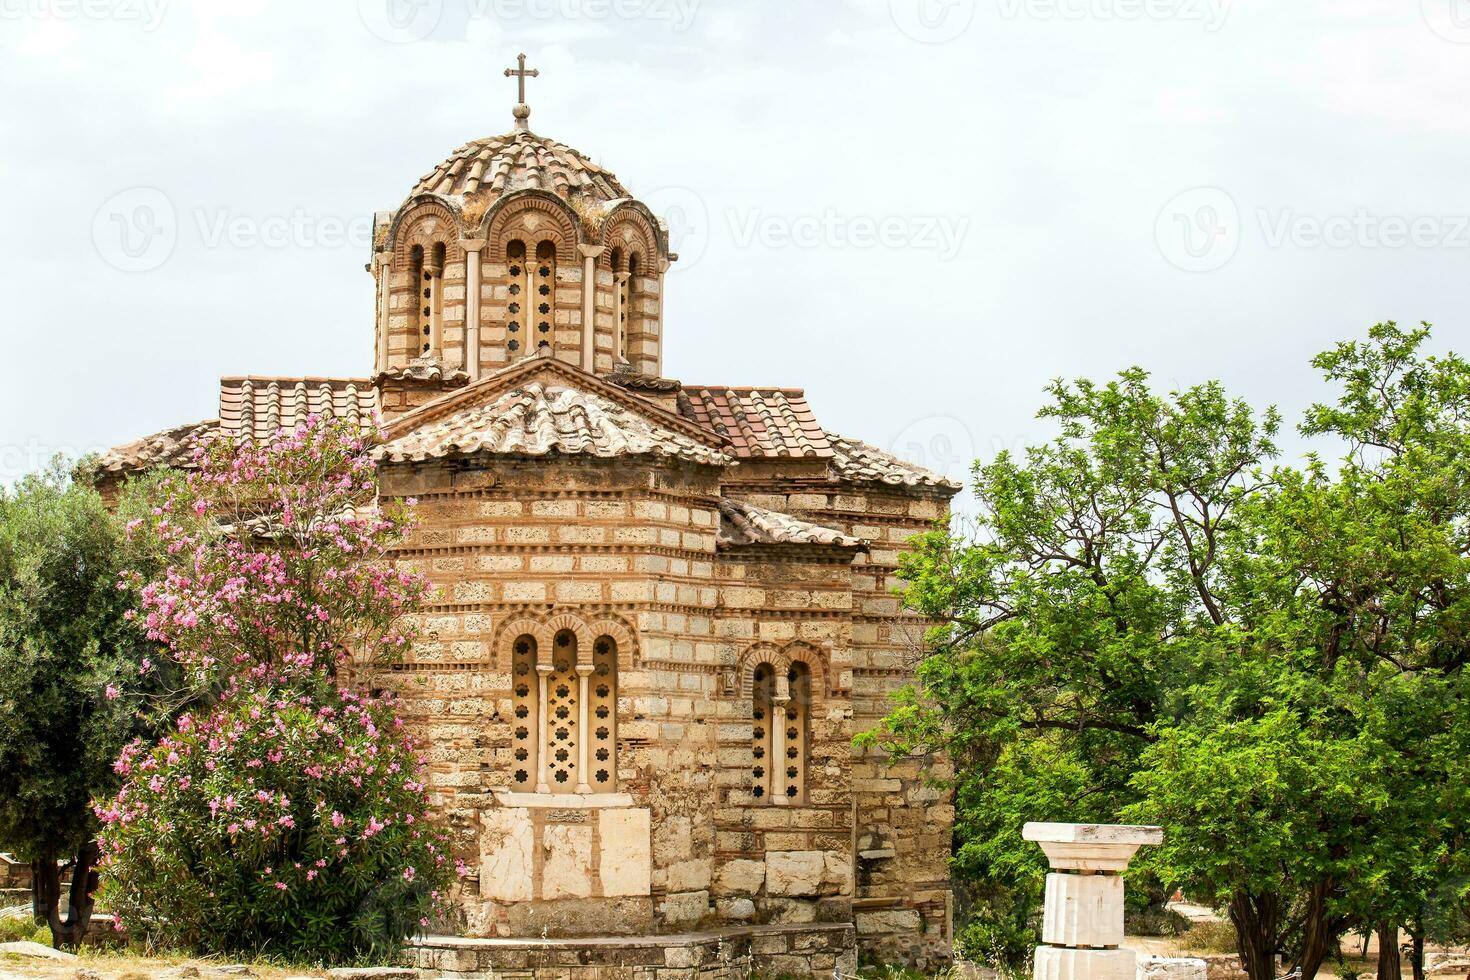 Iglesia de el santo apóstoles conocido como santo apóstoles de solaki situado en el antiguo ágora de Atenas construido en el 10 siglo foto